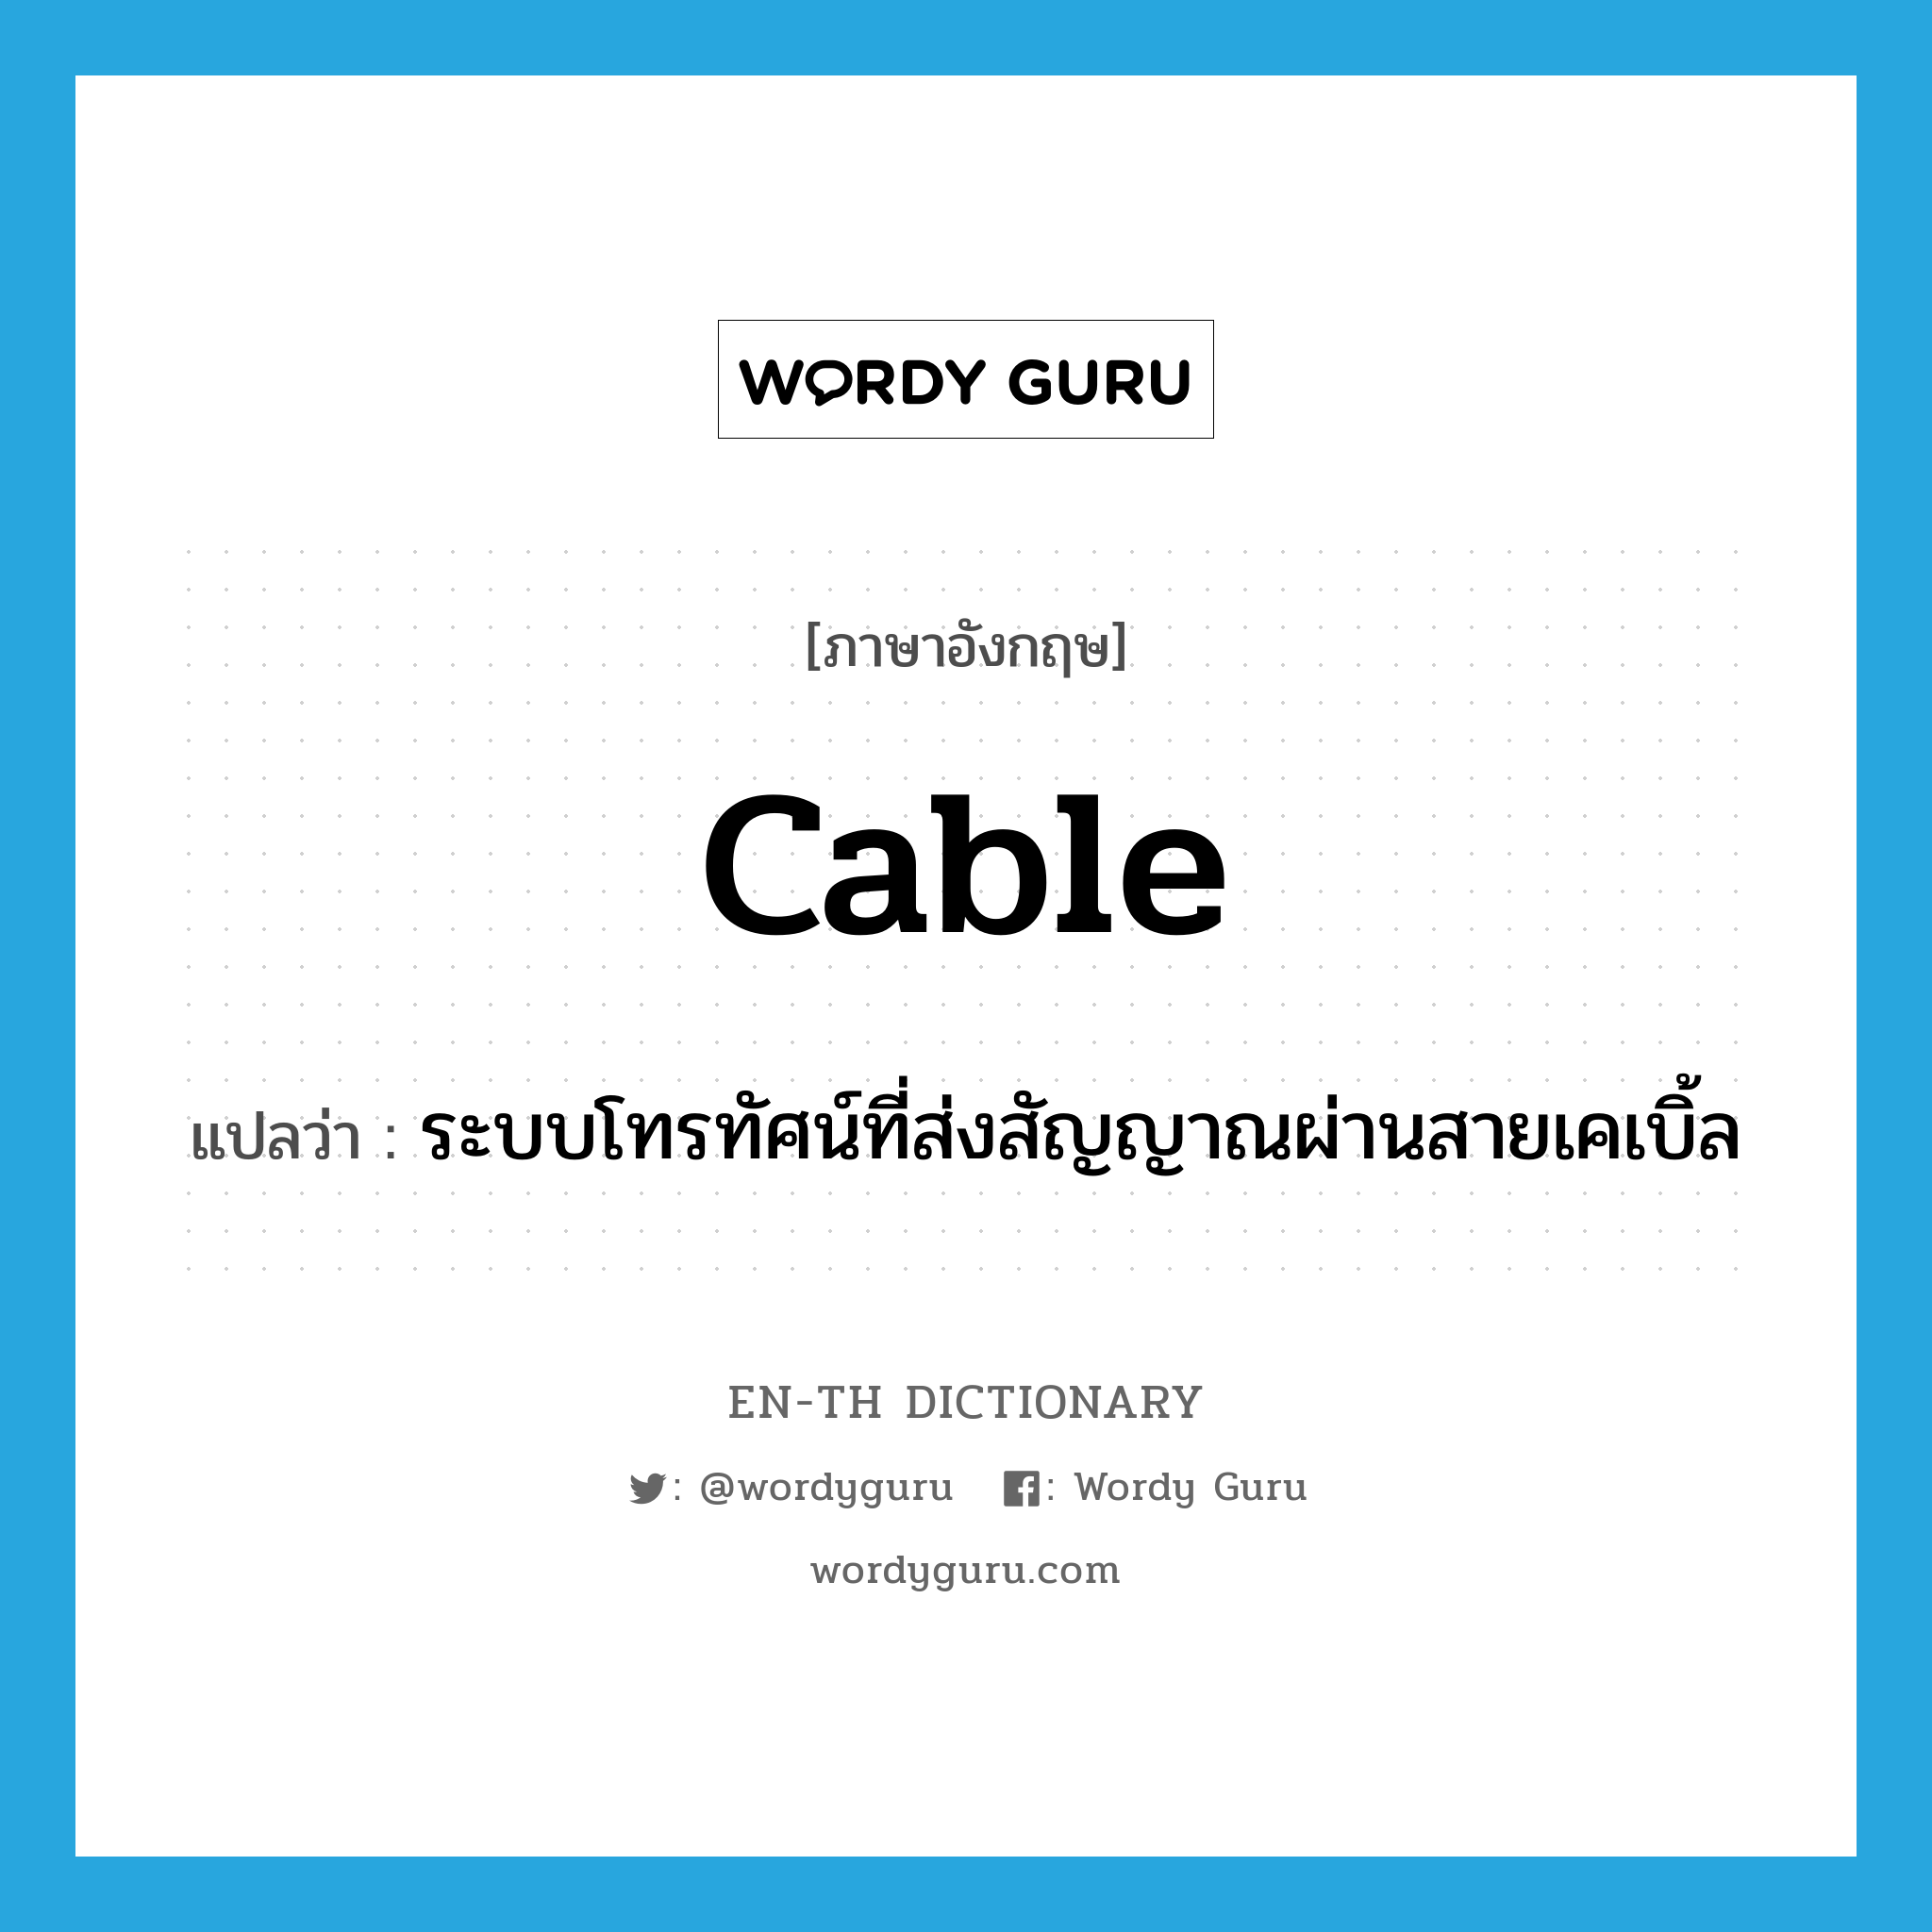 cable แปลว่า?, คำศัพท์ภาษาอังกฤษ cable แปลว่า ระบบโทรทัศน์ที่ส่งสัญญาณผ่านสายเคเบิ้ล ประเภท N หมวด N